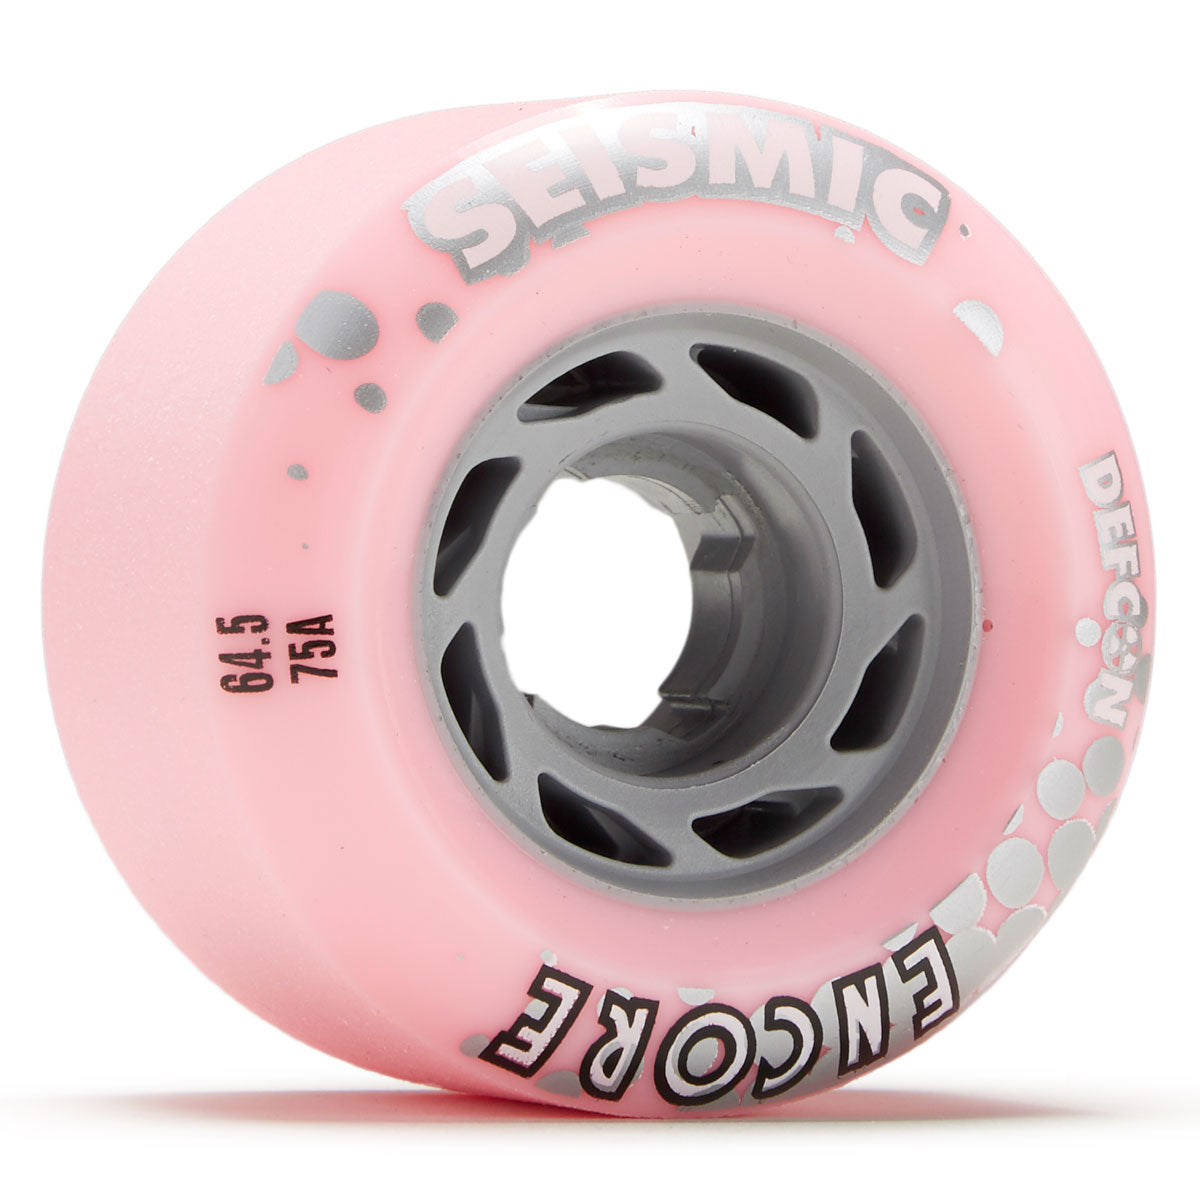 Seismic Encore 75a Longboard Wheels - Bubblegum - 64.5mm image 1